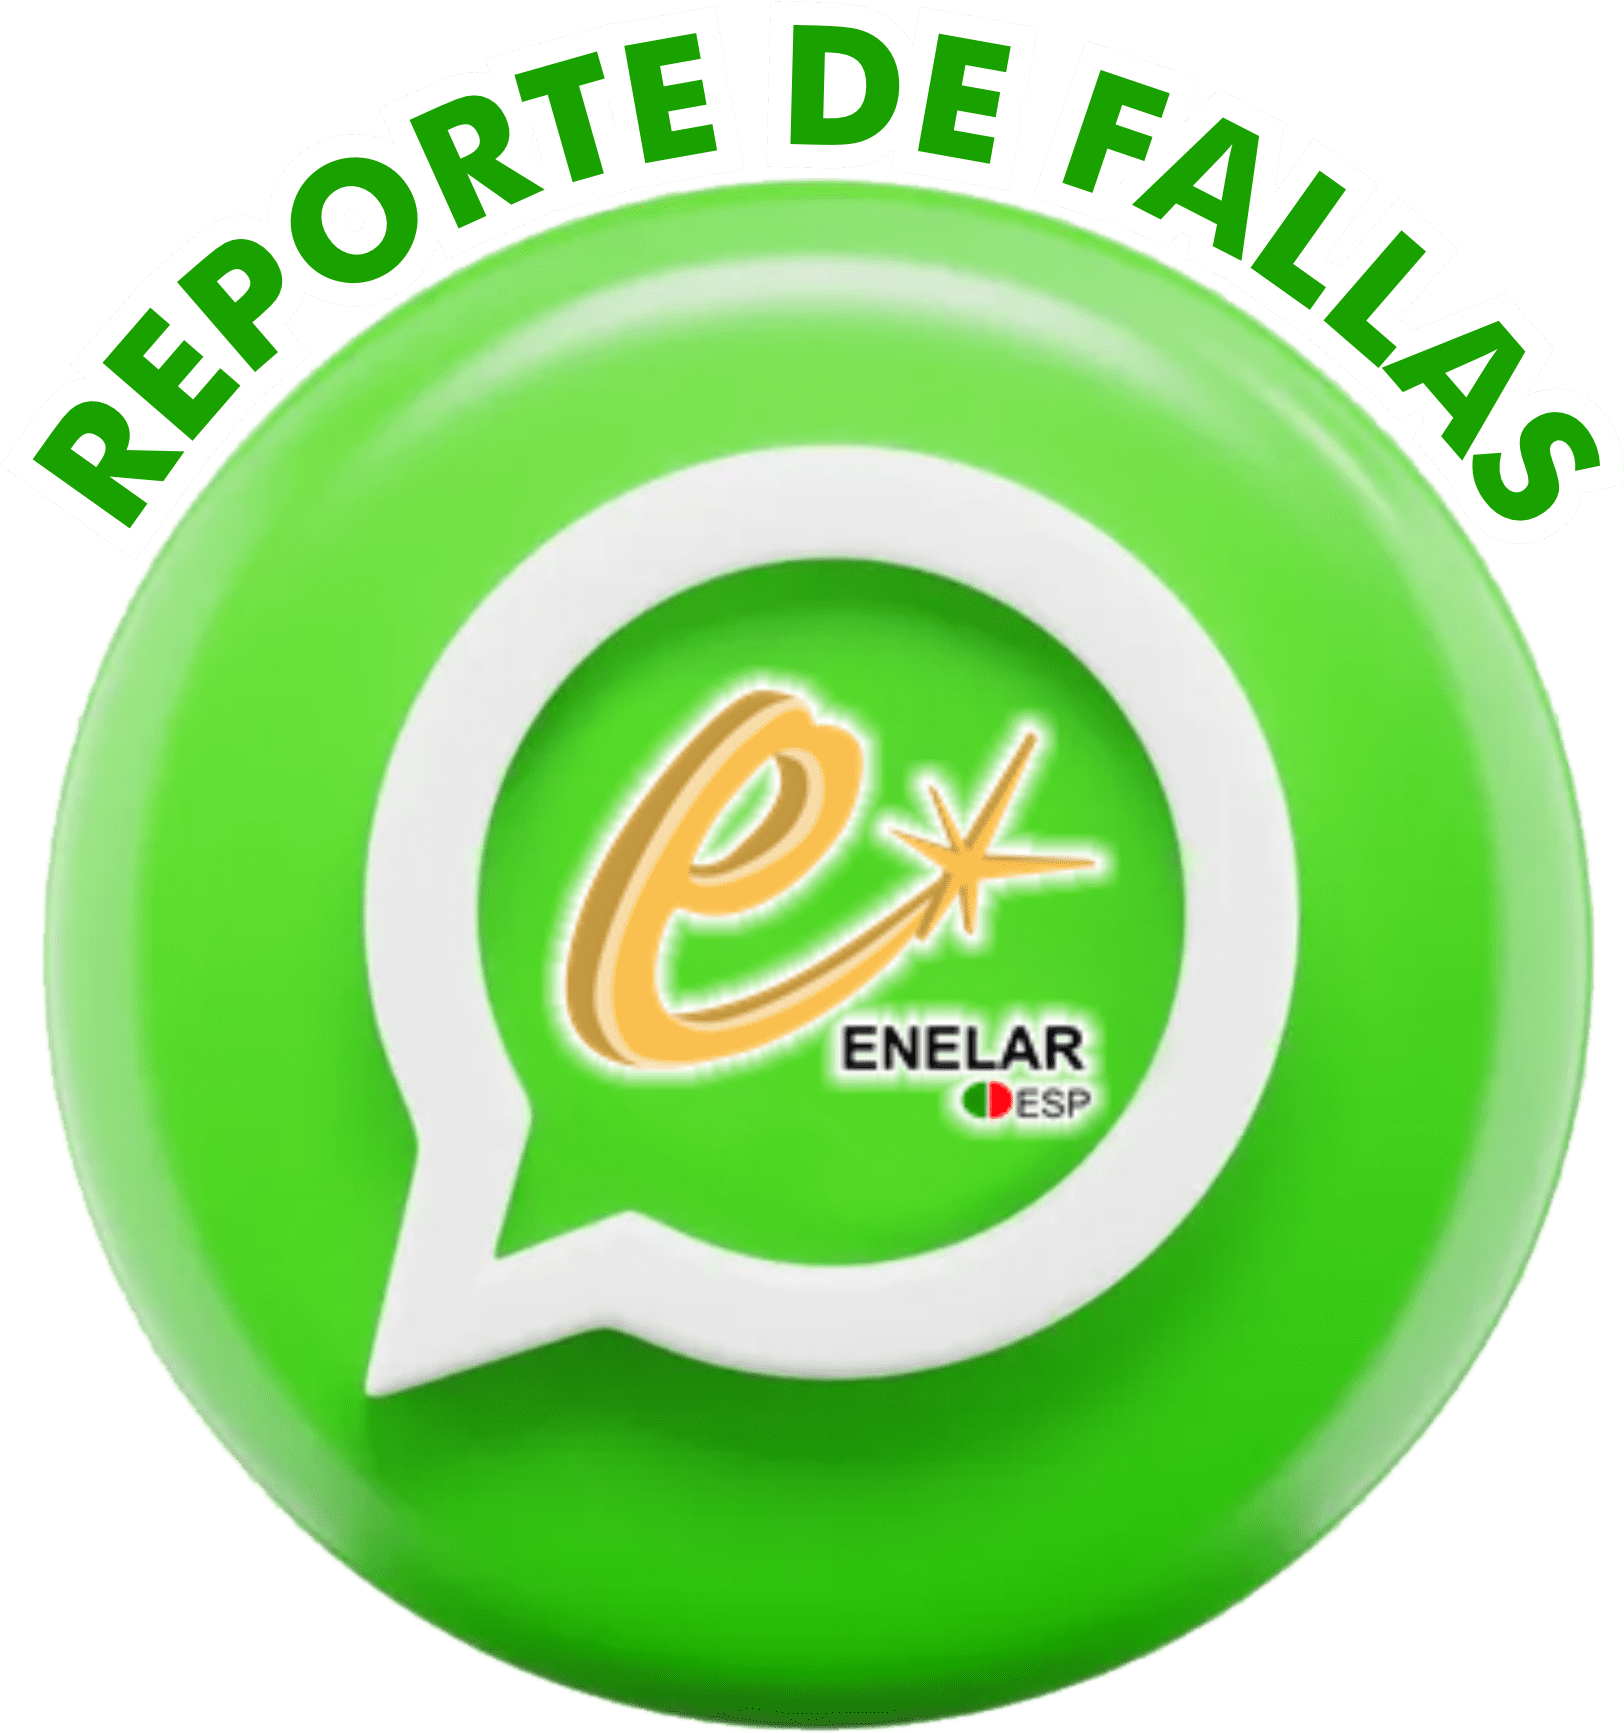 Reporte Fallas Enelar